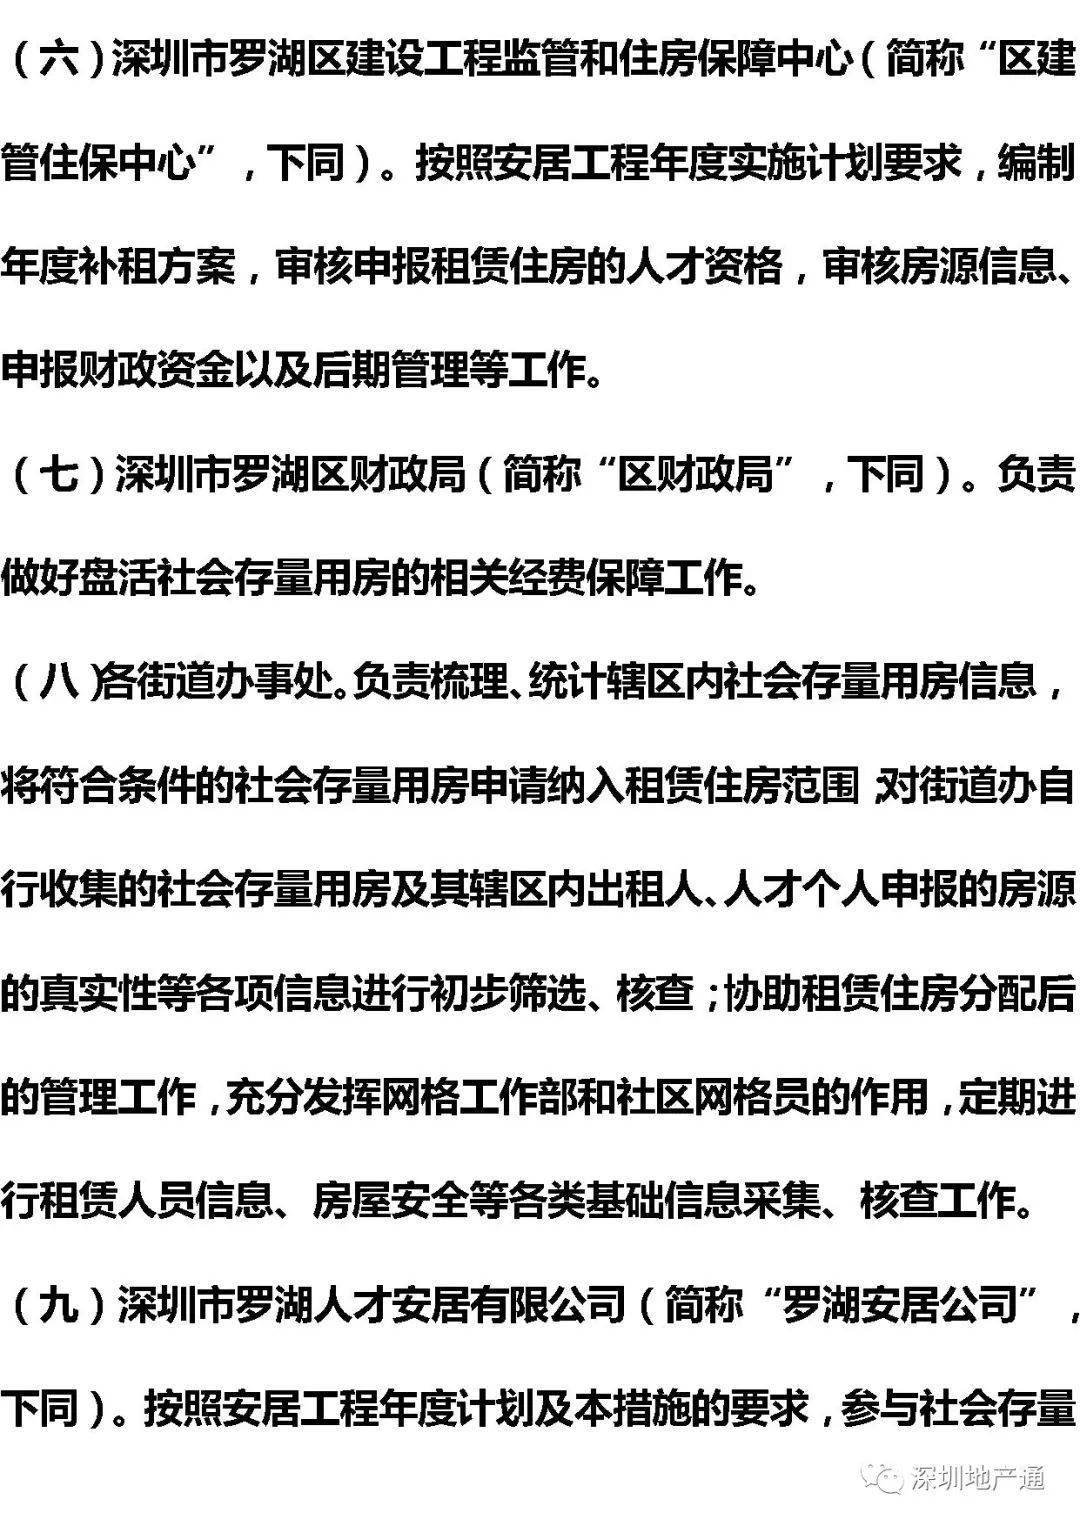 2017杭州最新房产政策_苏州最新房产限购政策_最新房产新闻 政策